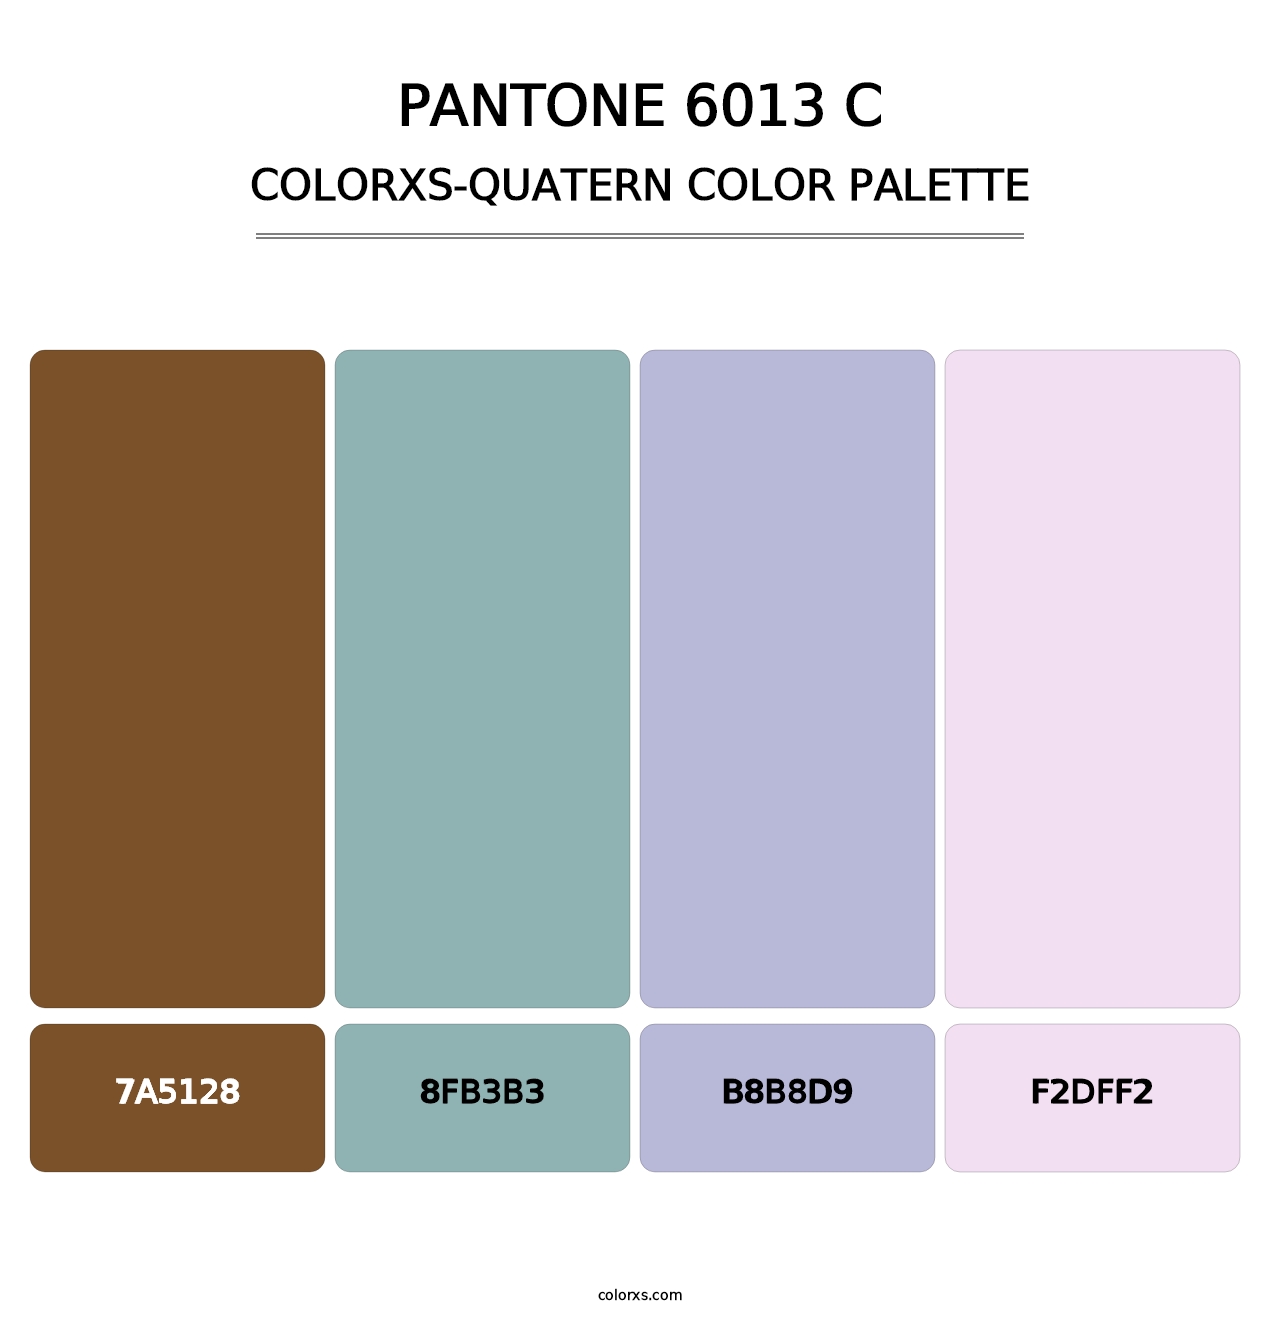 PANTONE 6013 C - Colorxs Quatern Palette